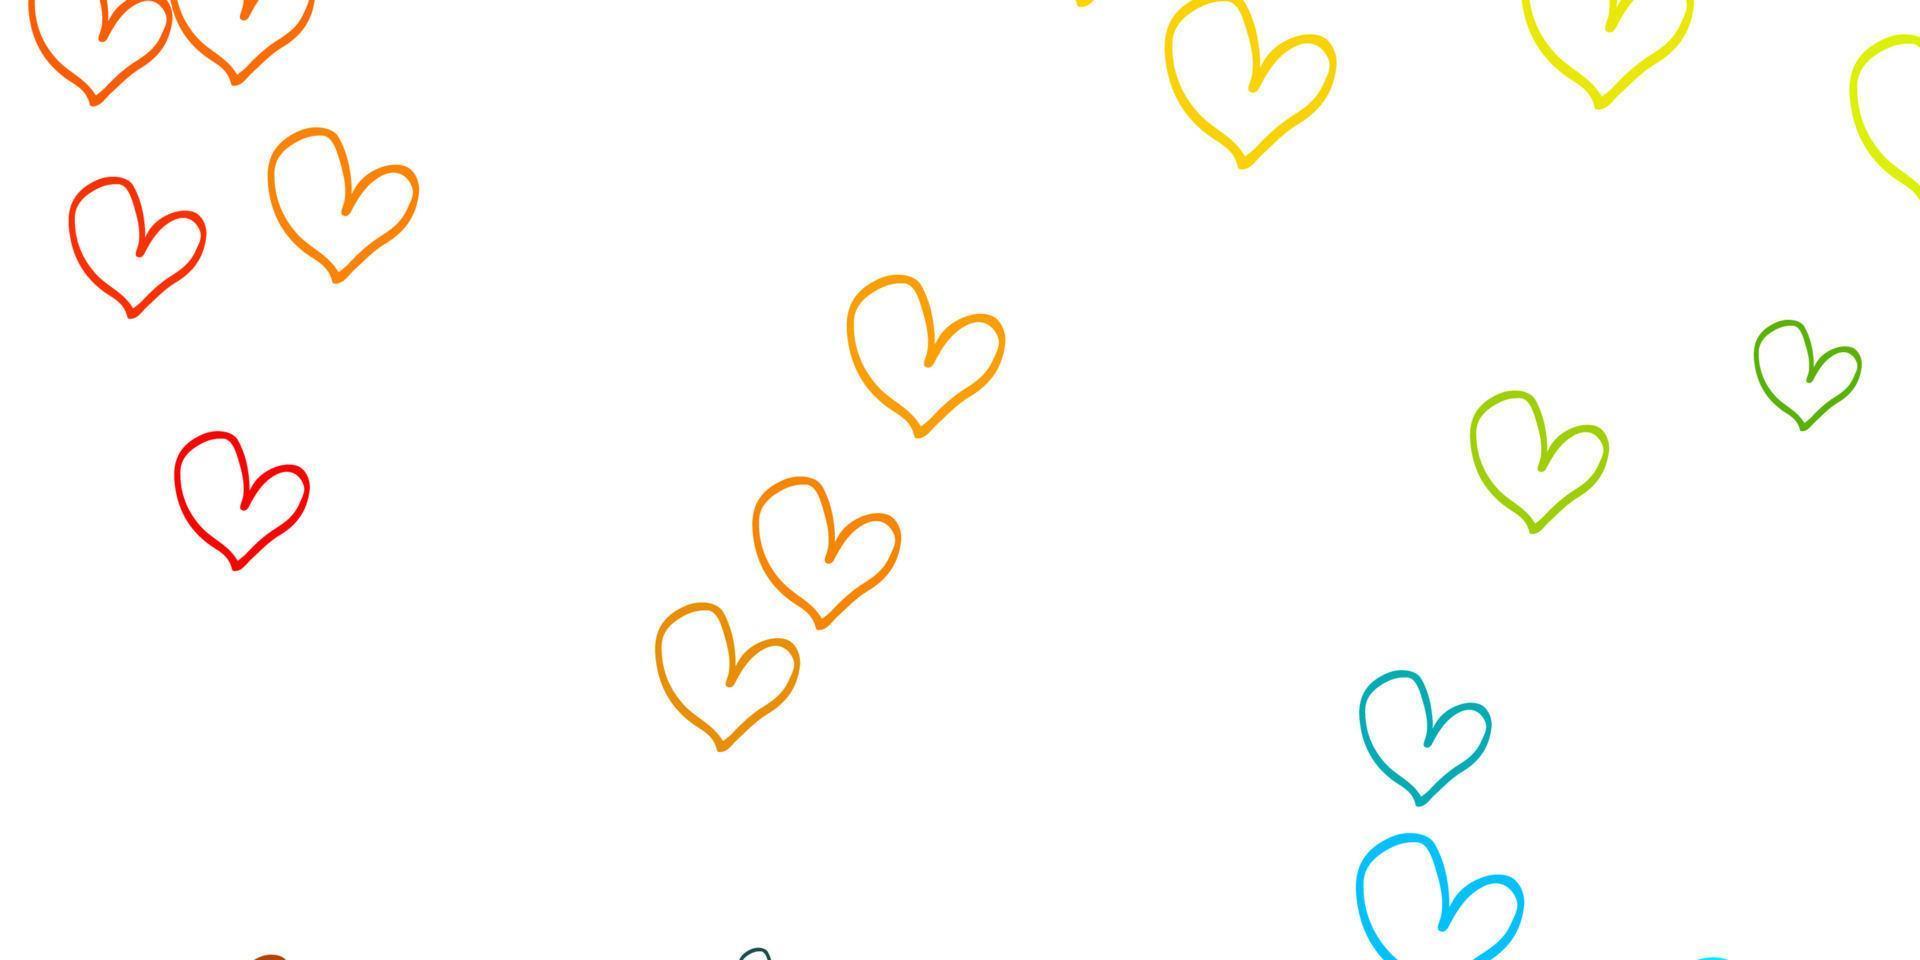 modelo de vetor azul e amarelo claro com corações de doodle.